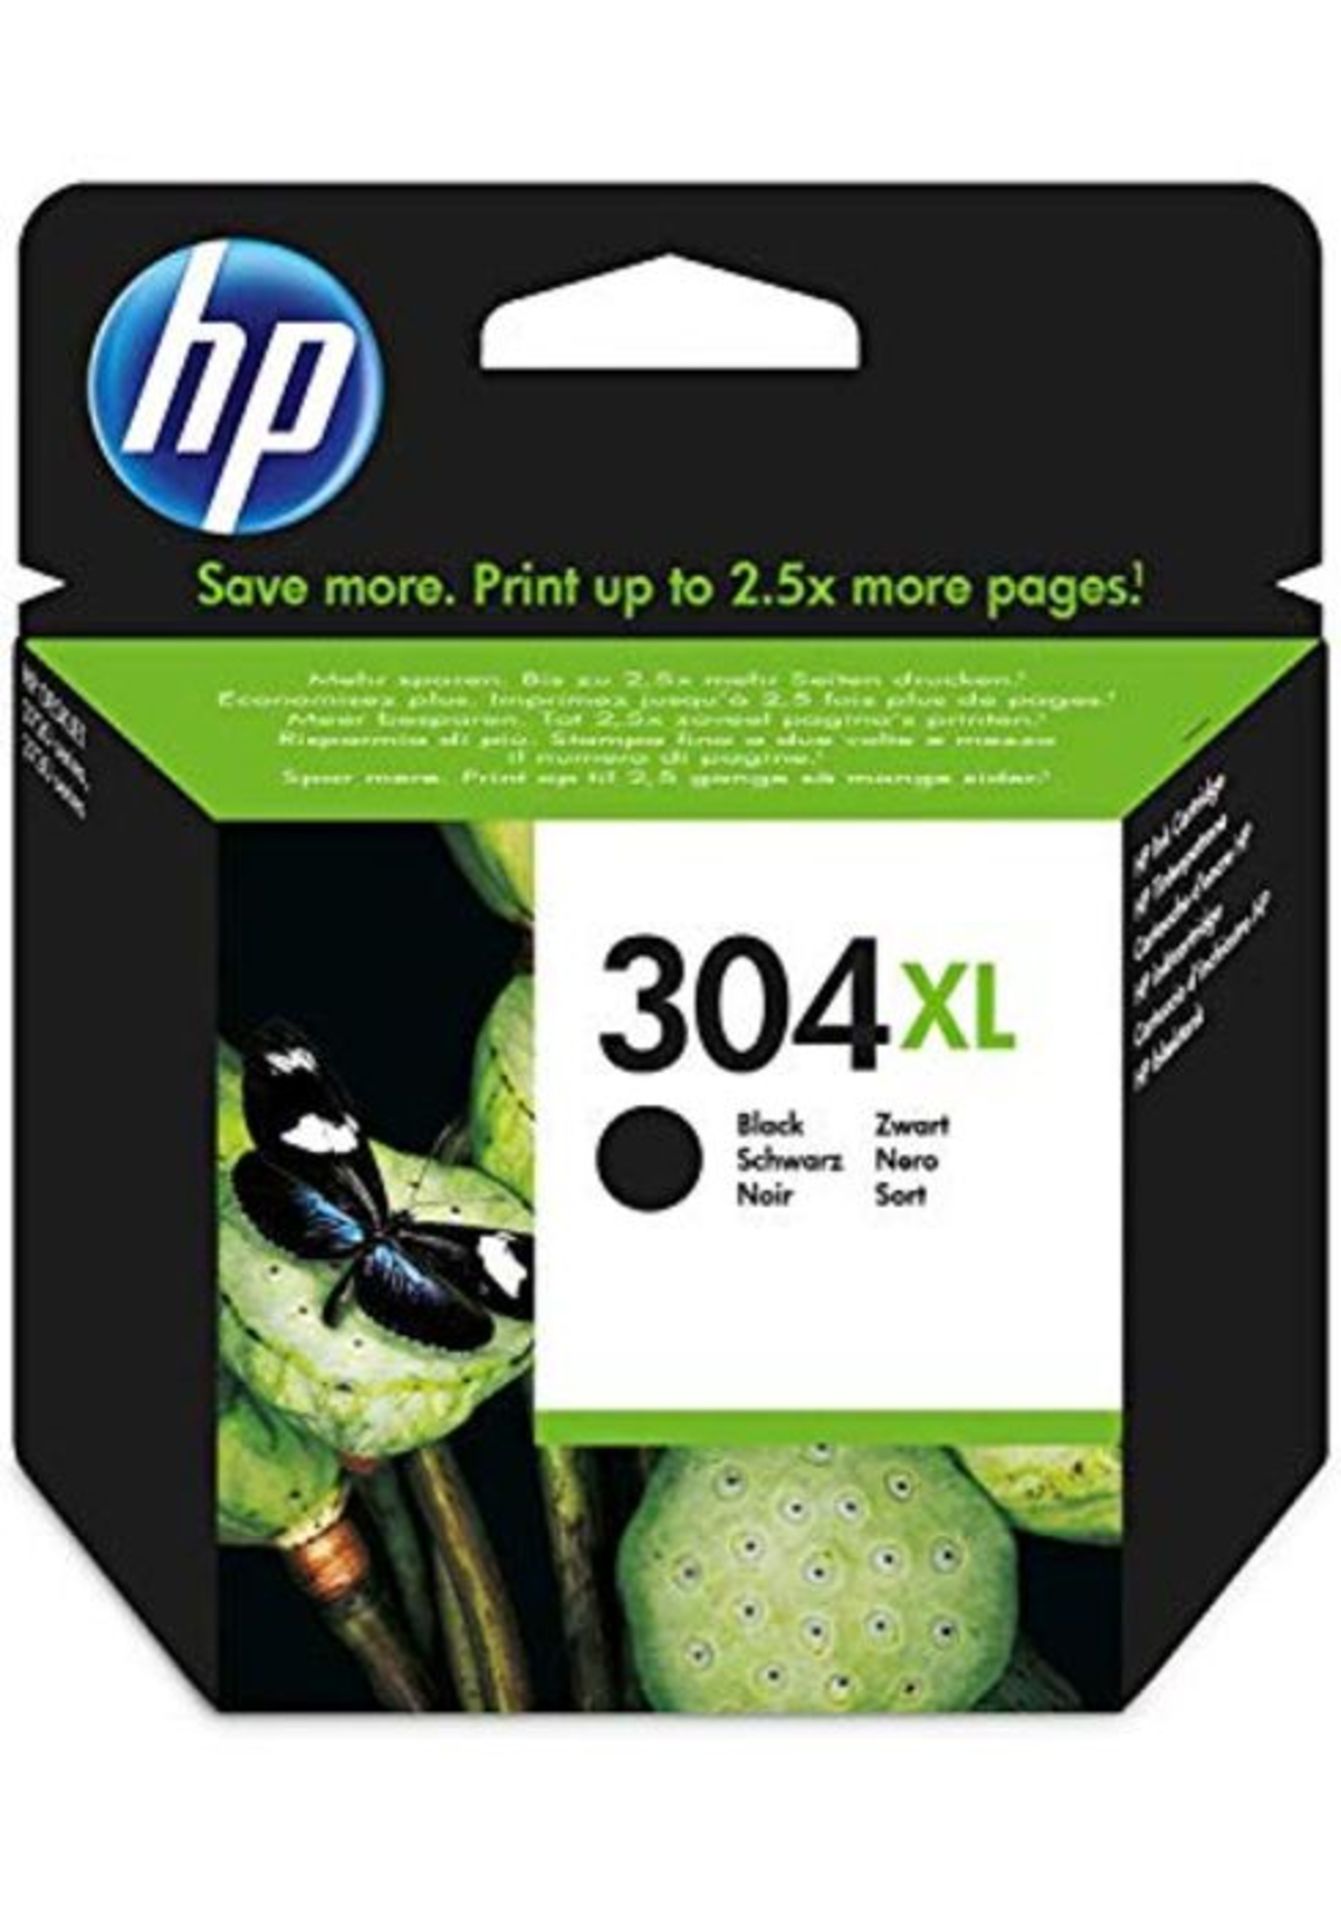 HP 304XL schwarz Original Druckerpatrone mit hoher Reichweite für HP DeskJet 2630, 37